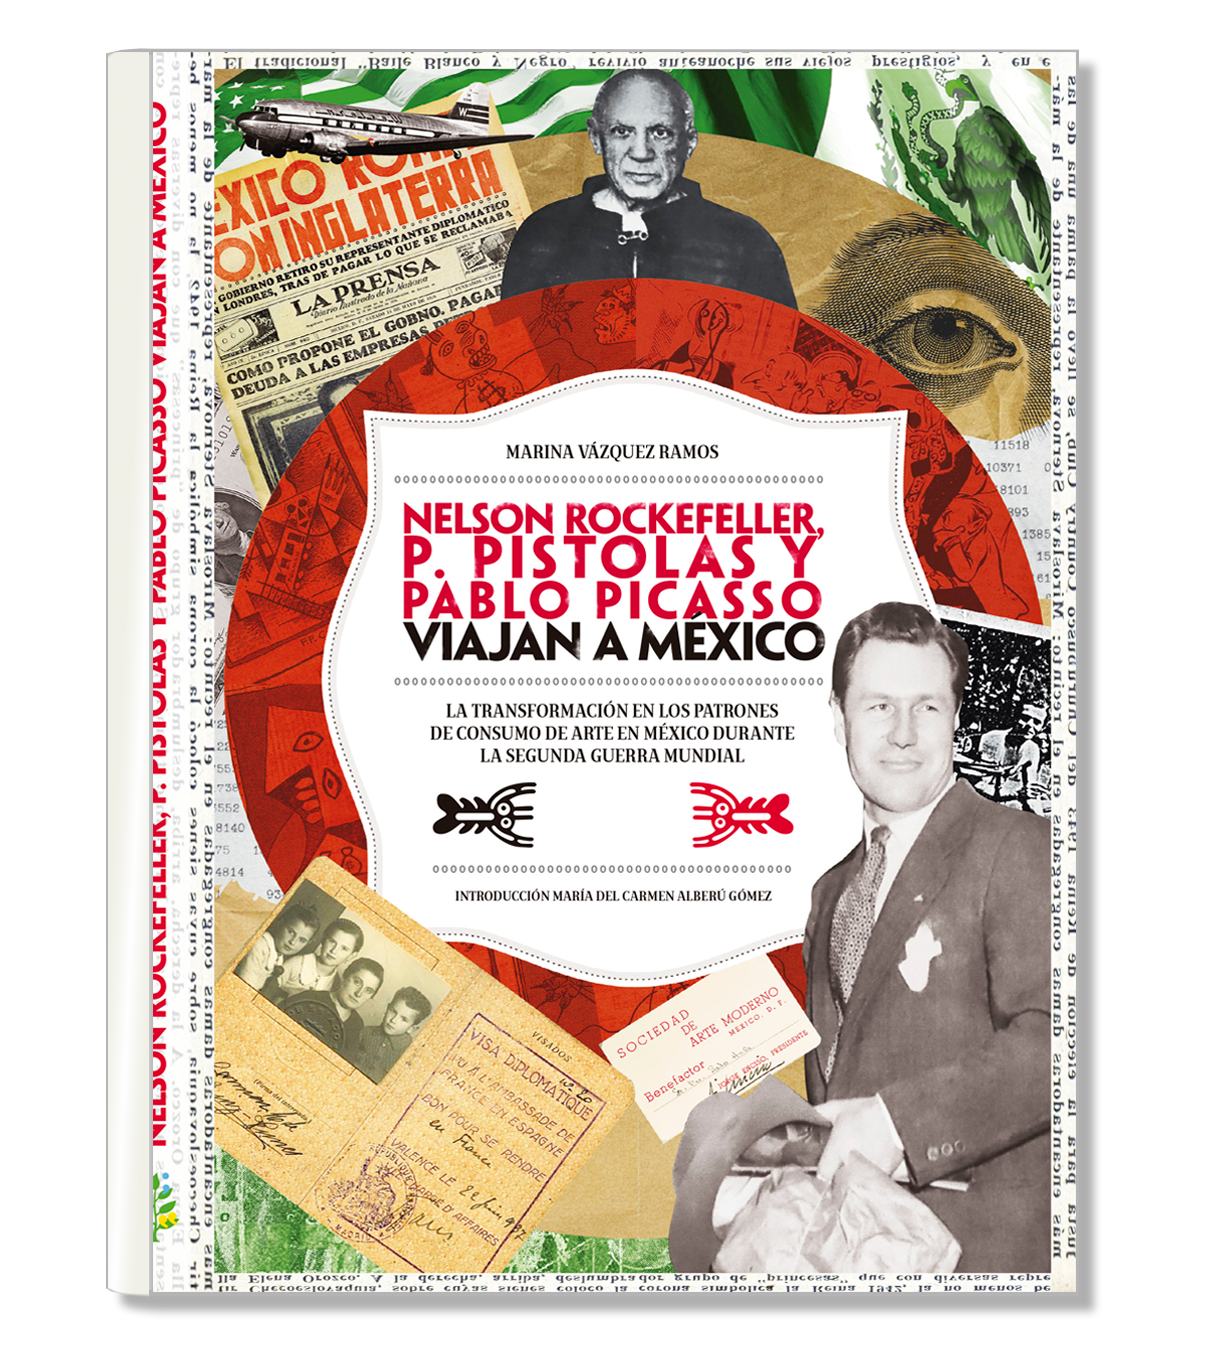 Nelson Rockefeller, P. Pistolas y Pablo Picasso viajan a México